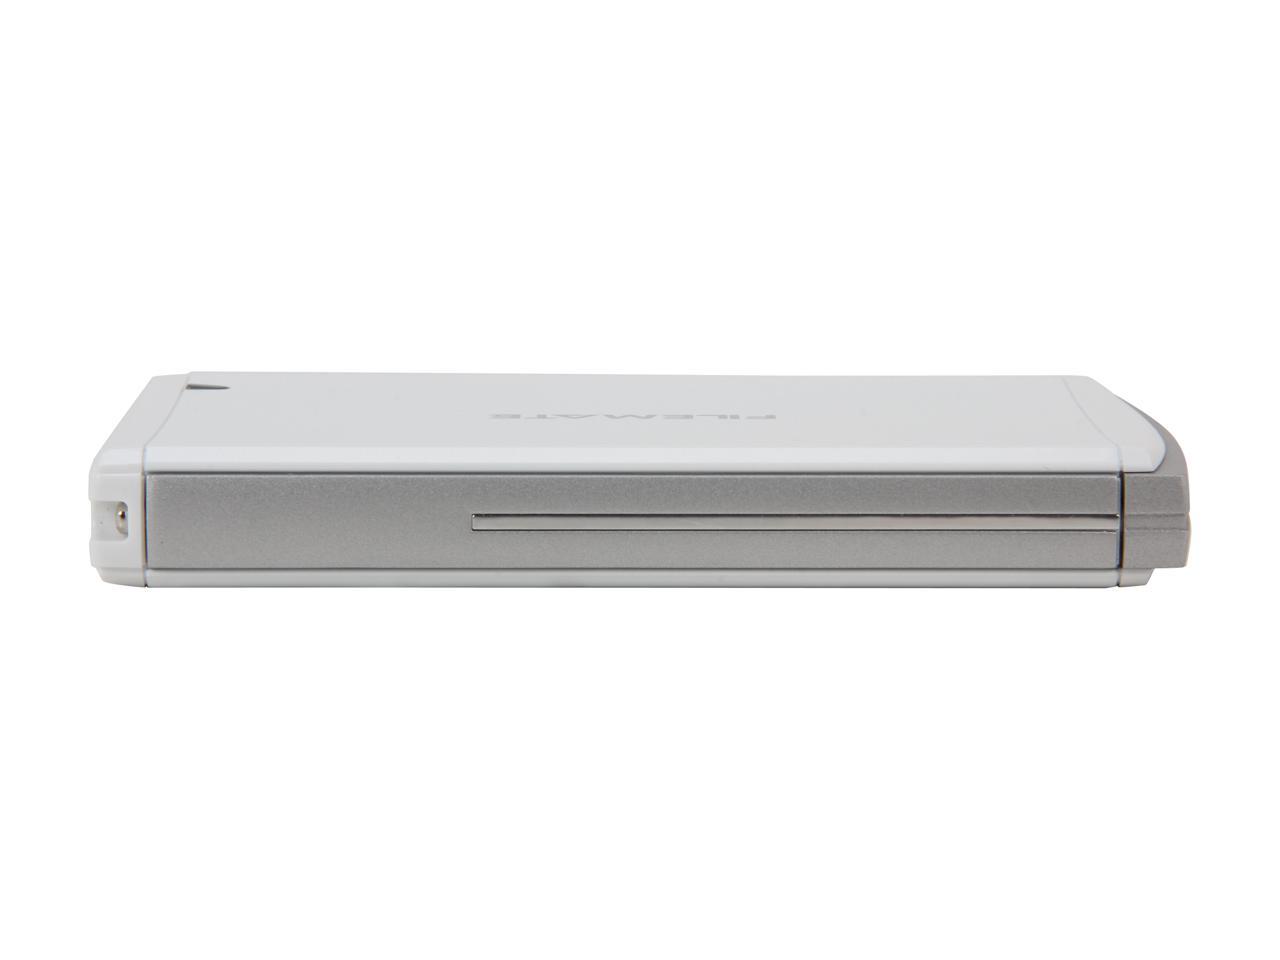 Wintec FileMate 3FME2500GW-R Aluminum alloy 2.5" White SATA I/II USB 2.0 HDD External Enclosure